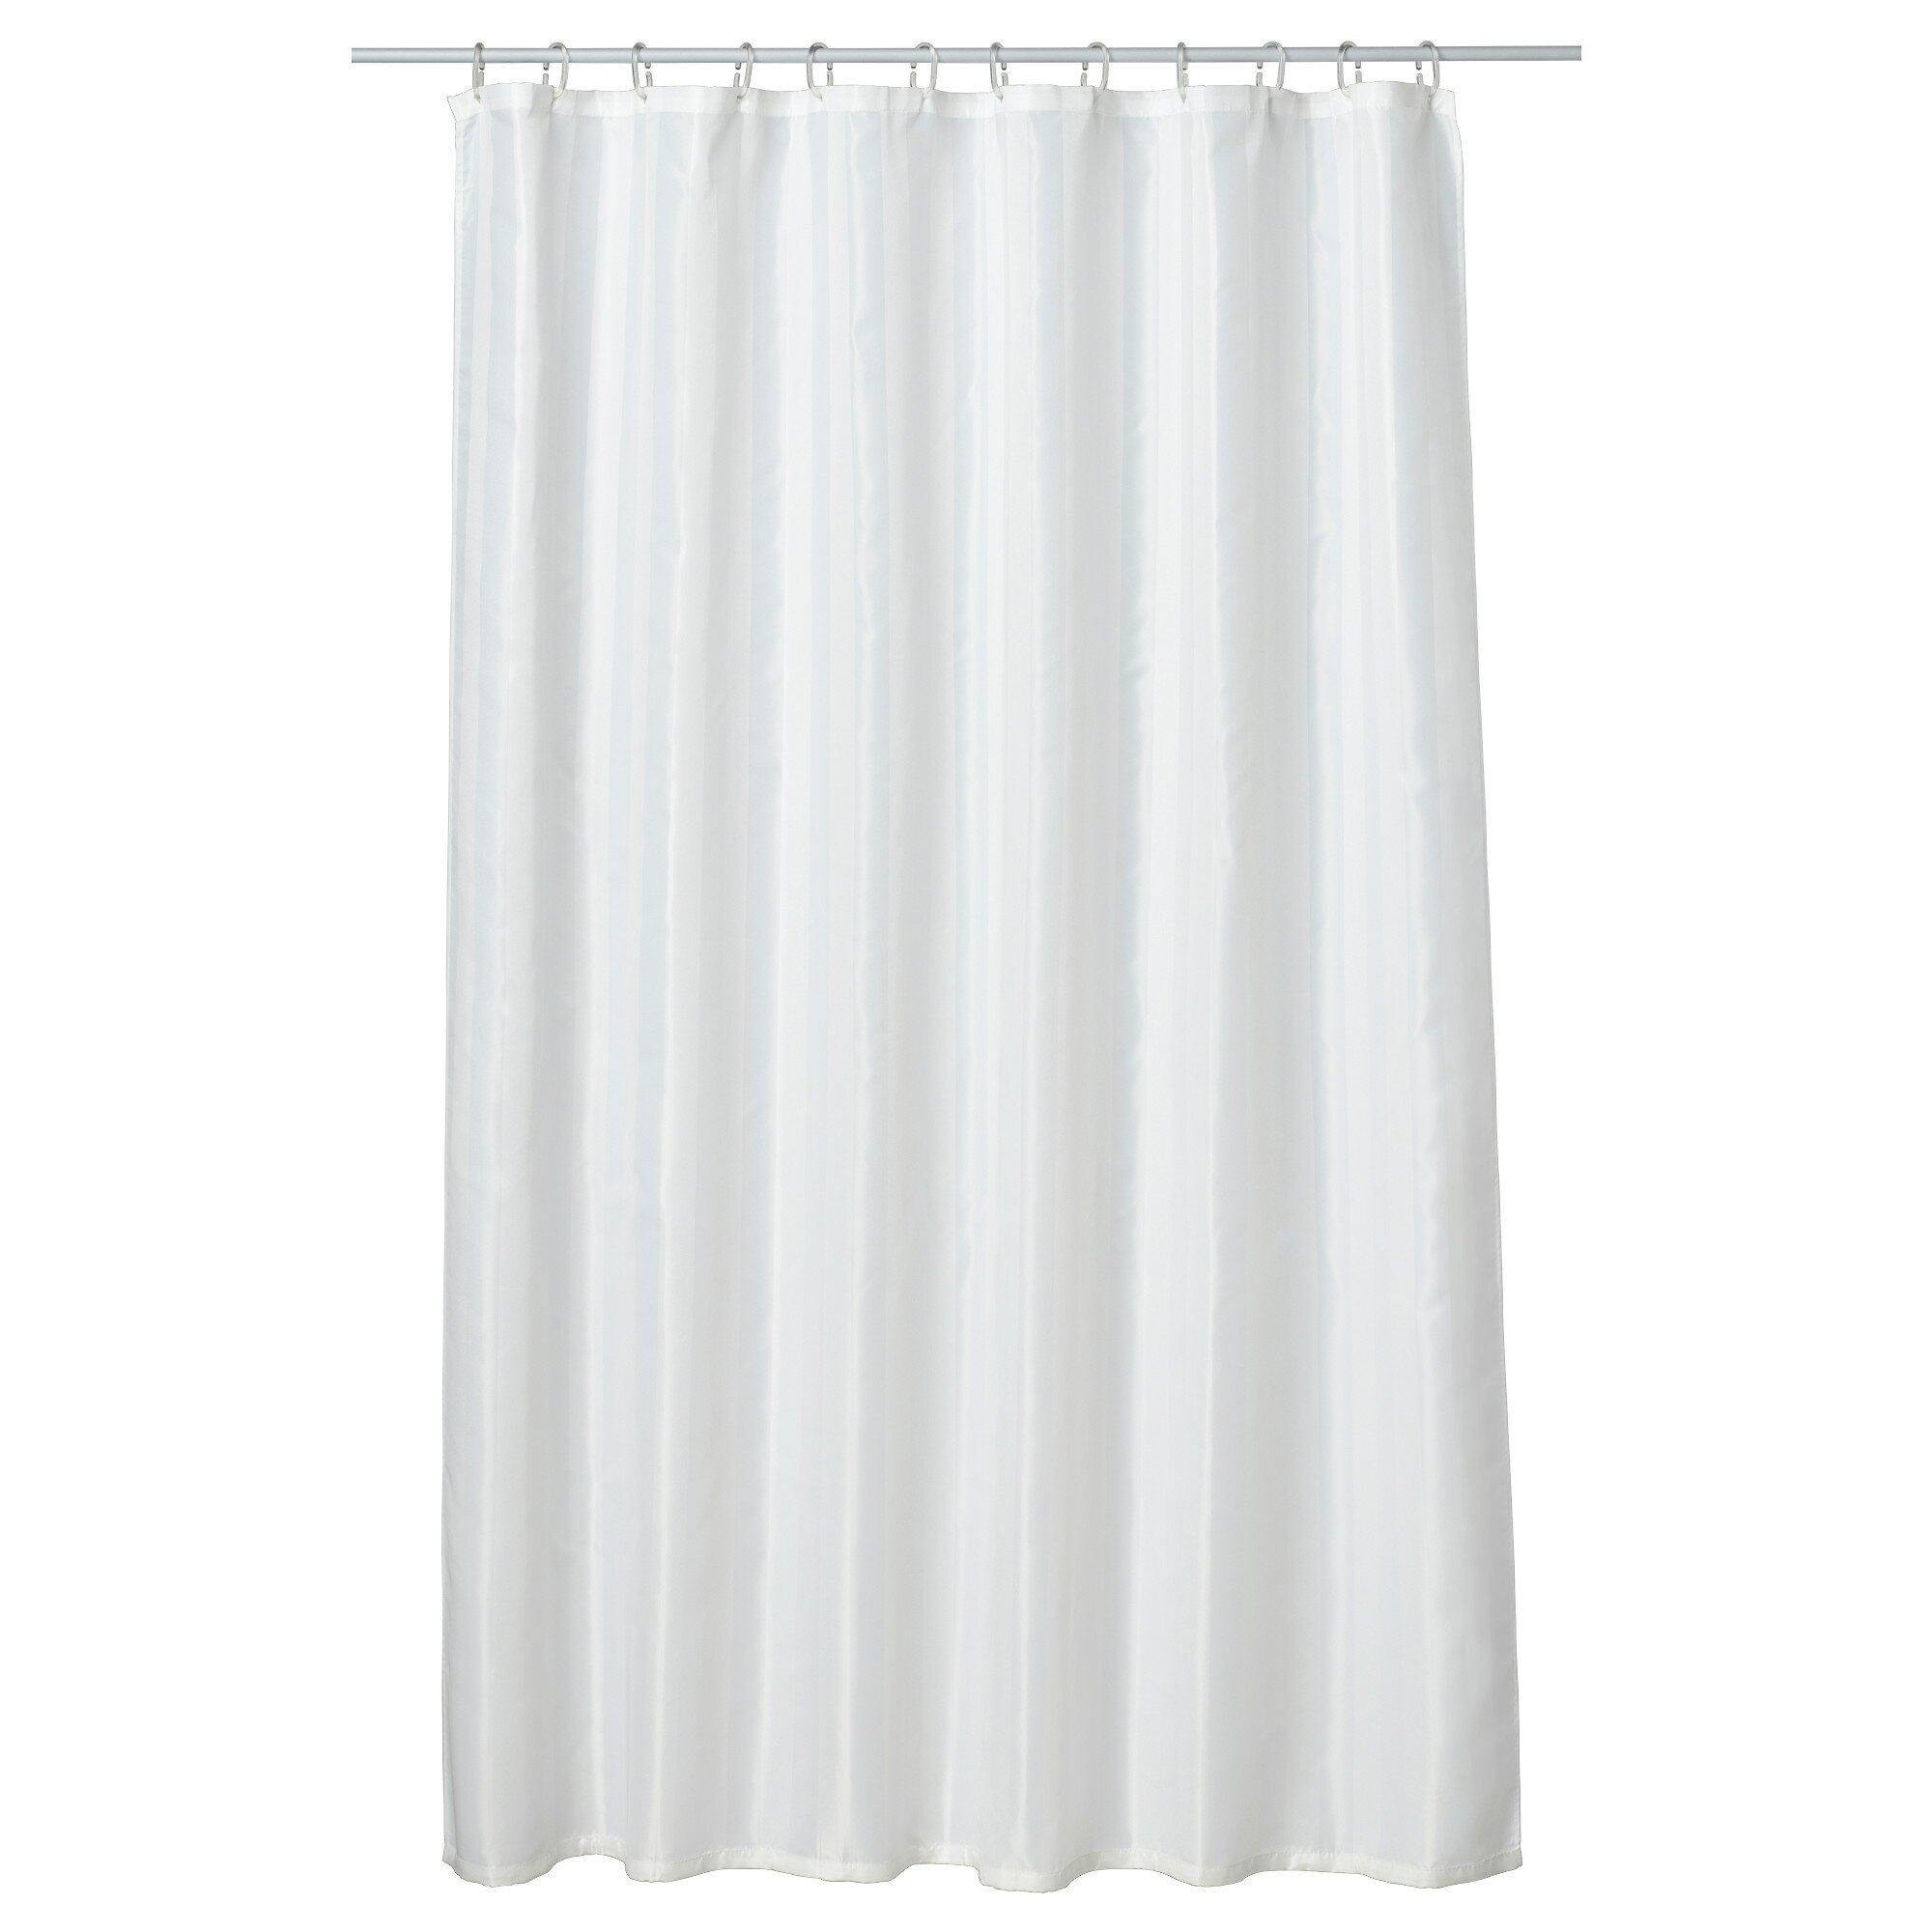 Ikea Shower Curtain | Shower Curtain Rail Ikea | Ikea Shower Curtain Rail